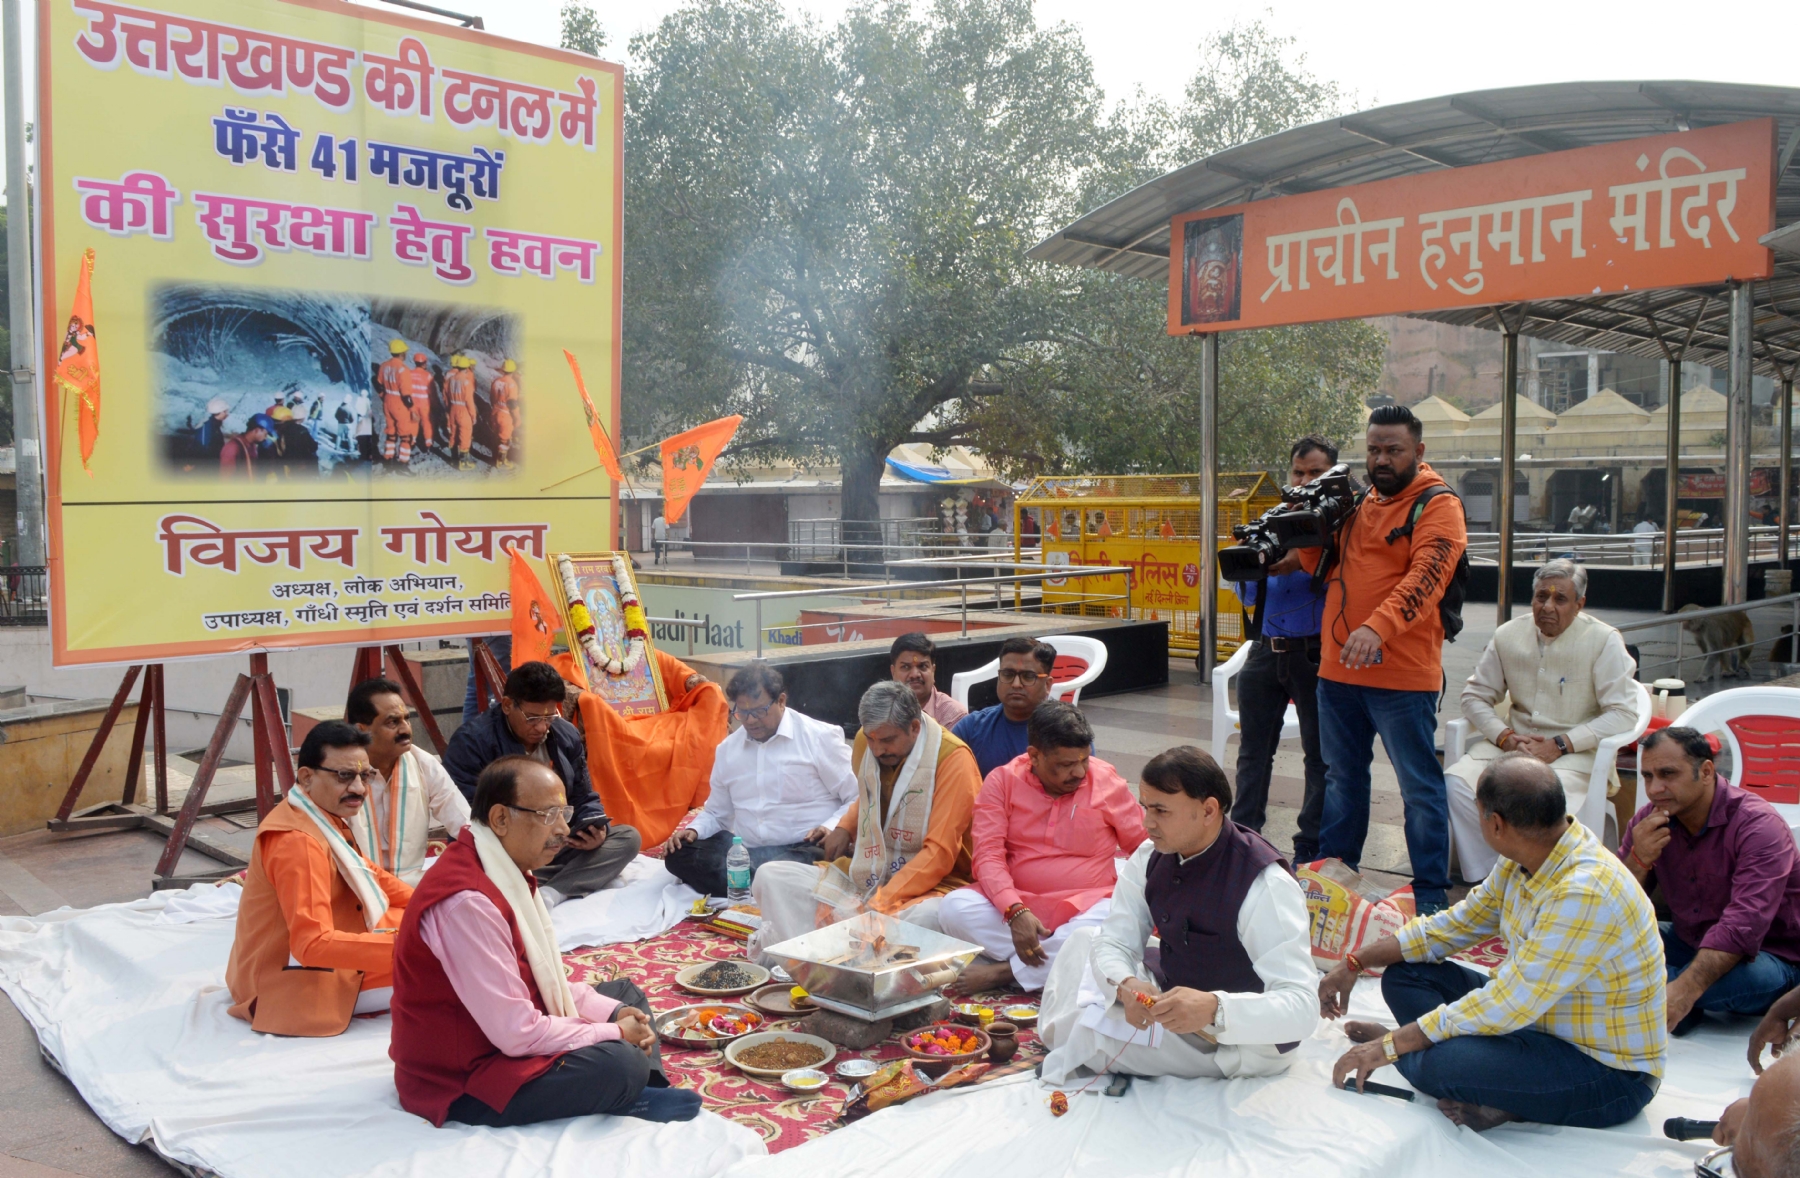 नई दिल्ली में सोमवार 20 नवंबर को गांधी दर्शन के उपाध्यक्ष विजय गोयल ने उत्तरकाशी में फंसे 40 श्रमिकों को सुरक्षित निकालने के लिए कनॉट प्लेस स्थित हनुमान मंदिर में हवन करते हुए। हिन्दुस्थान समाचार/ गणेश भिष्ट 